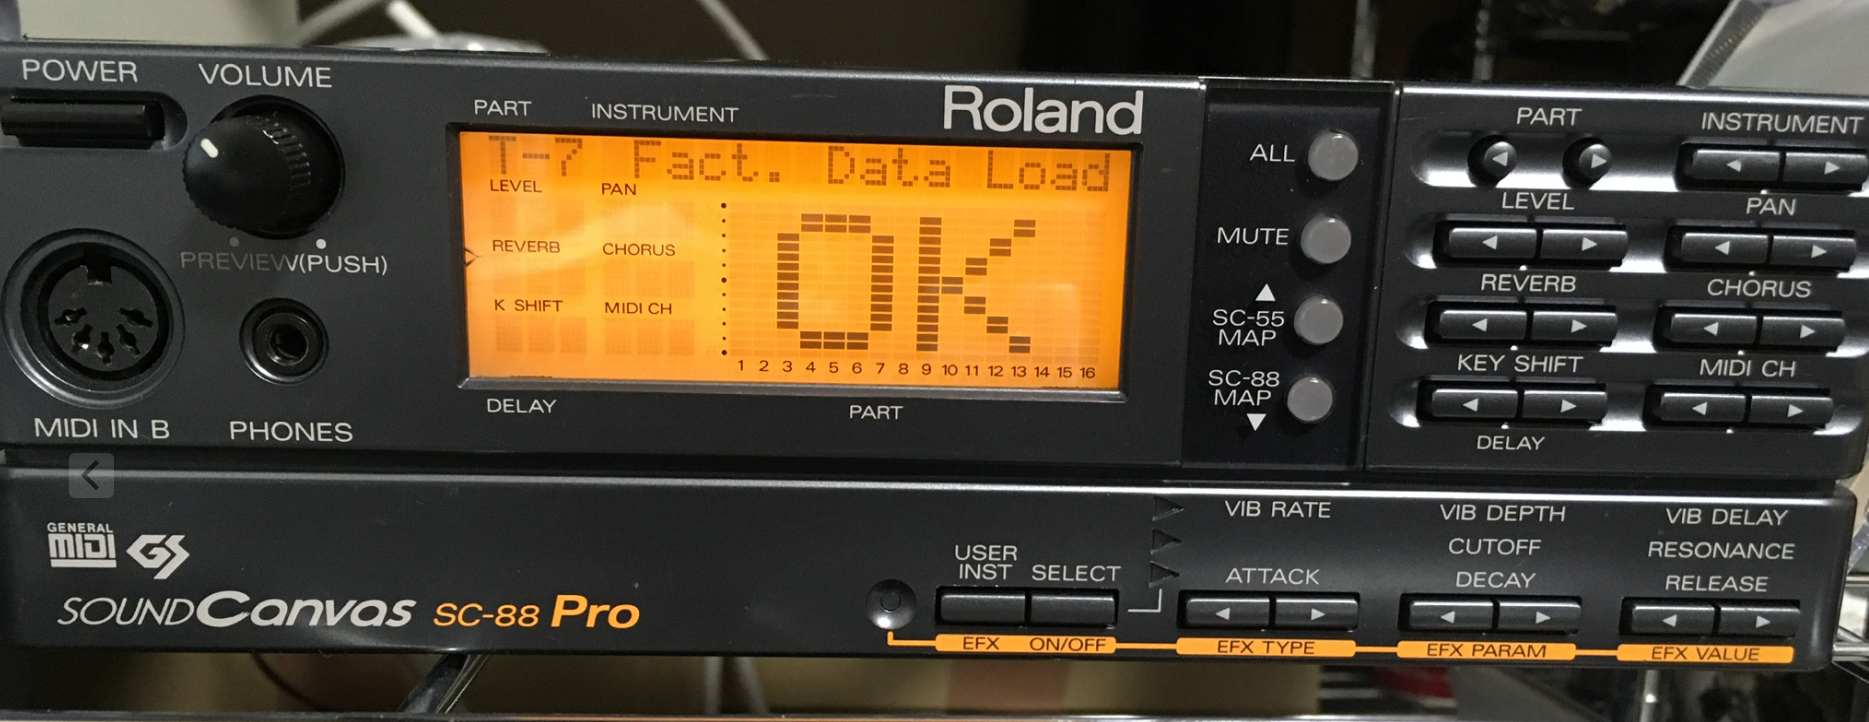 MIDI音源】今更ながらSC-88Proを購入しました | PC弄り好きの趣味語り